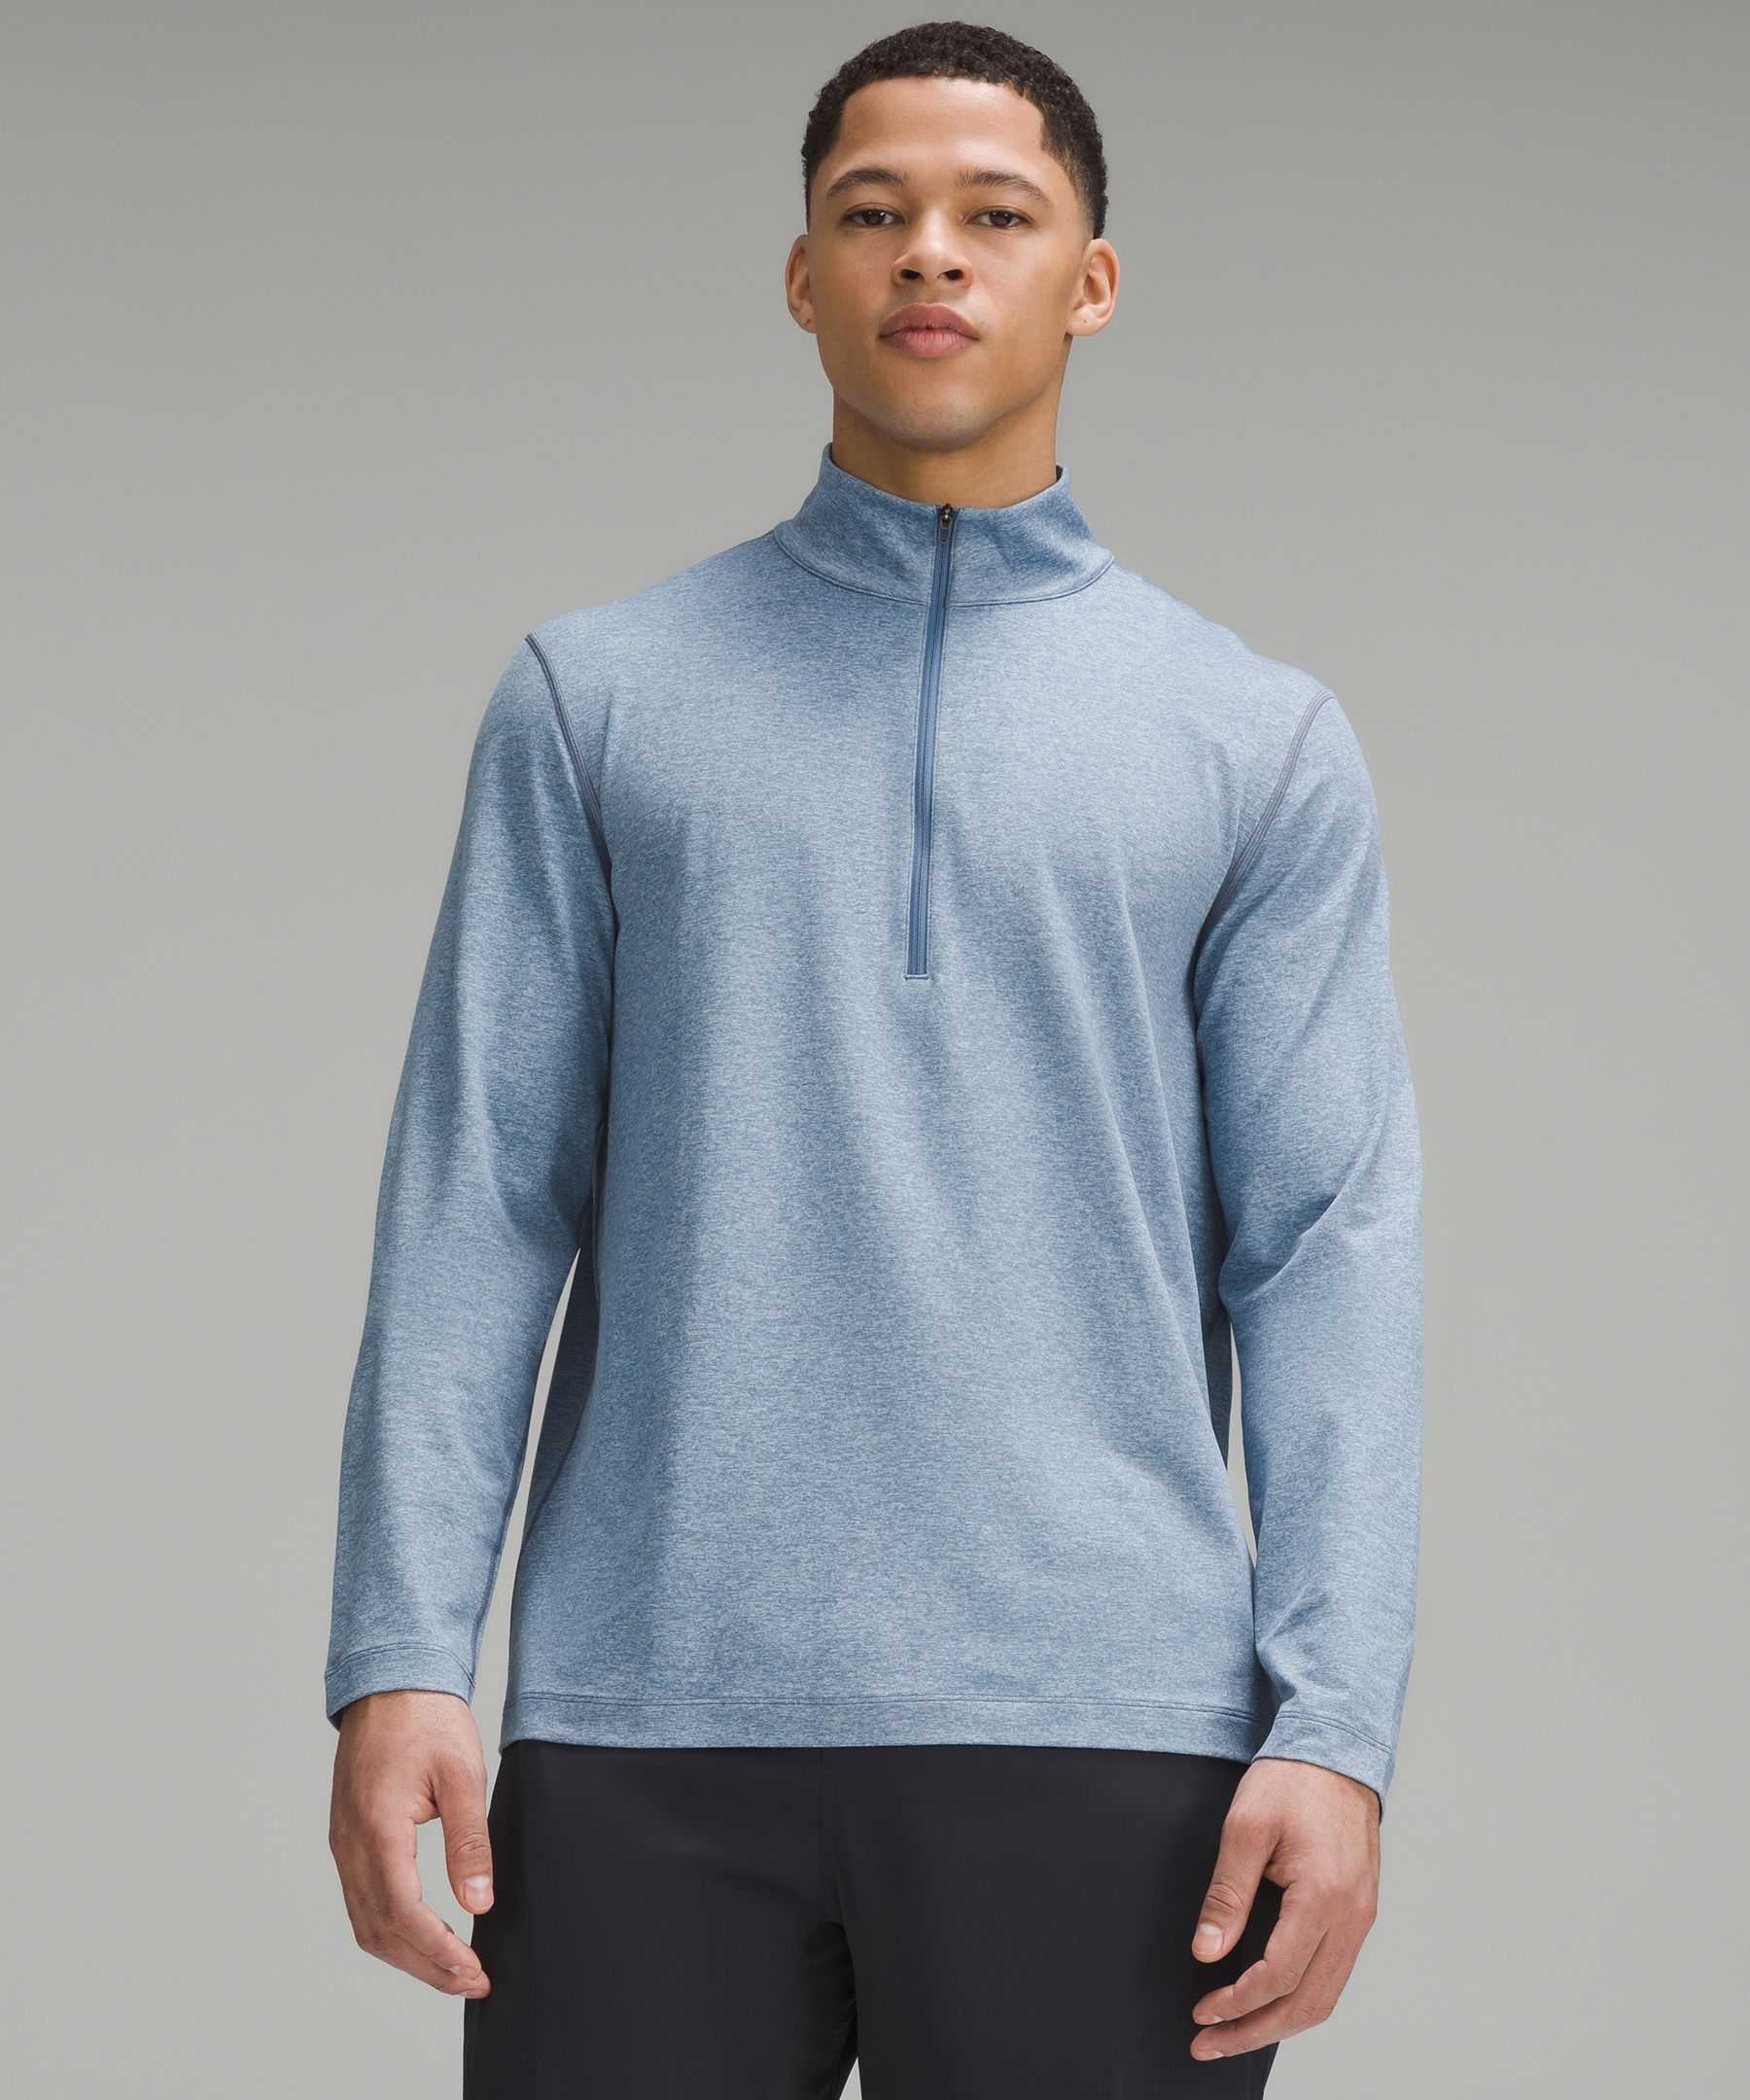 Soft Jersey Half Zip, Men's Long Sleeve Shirts